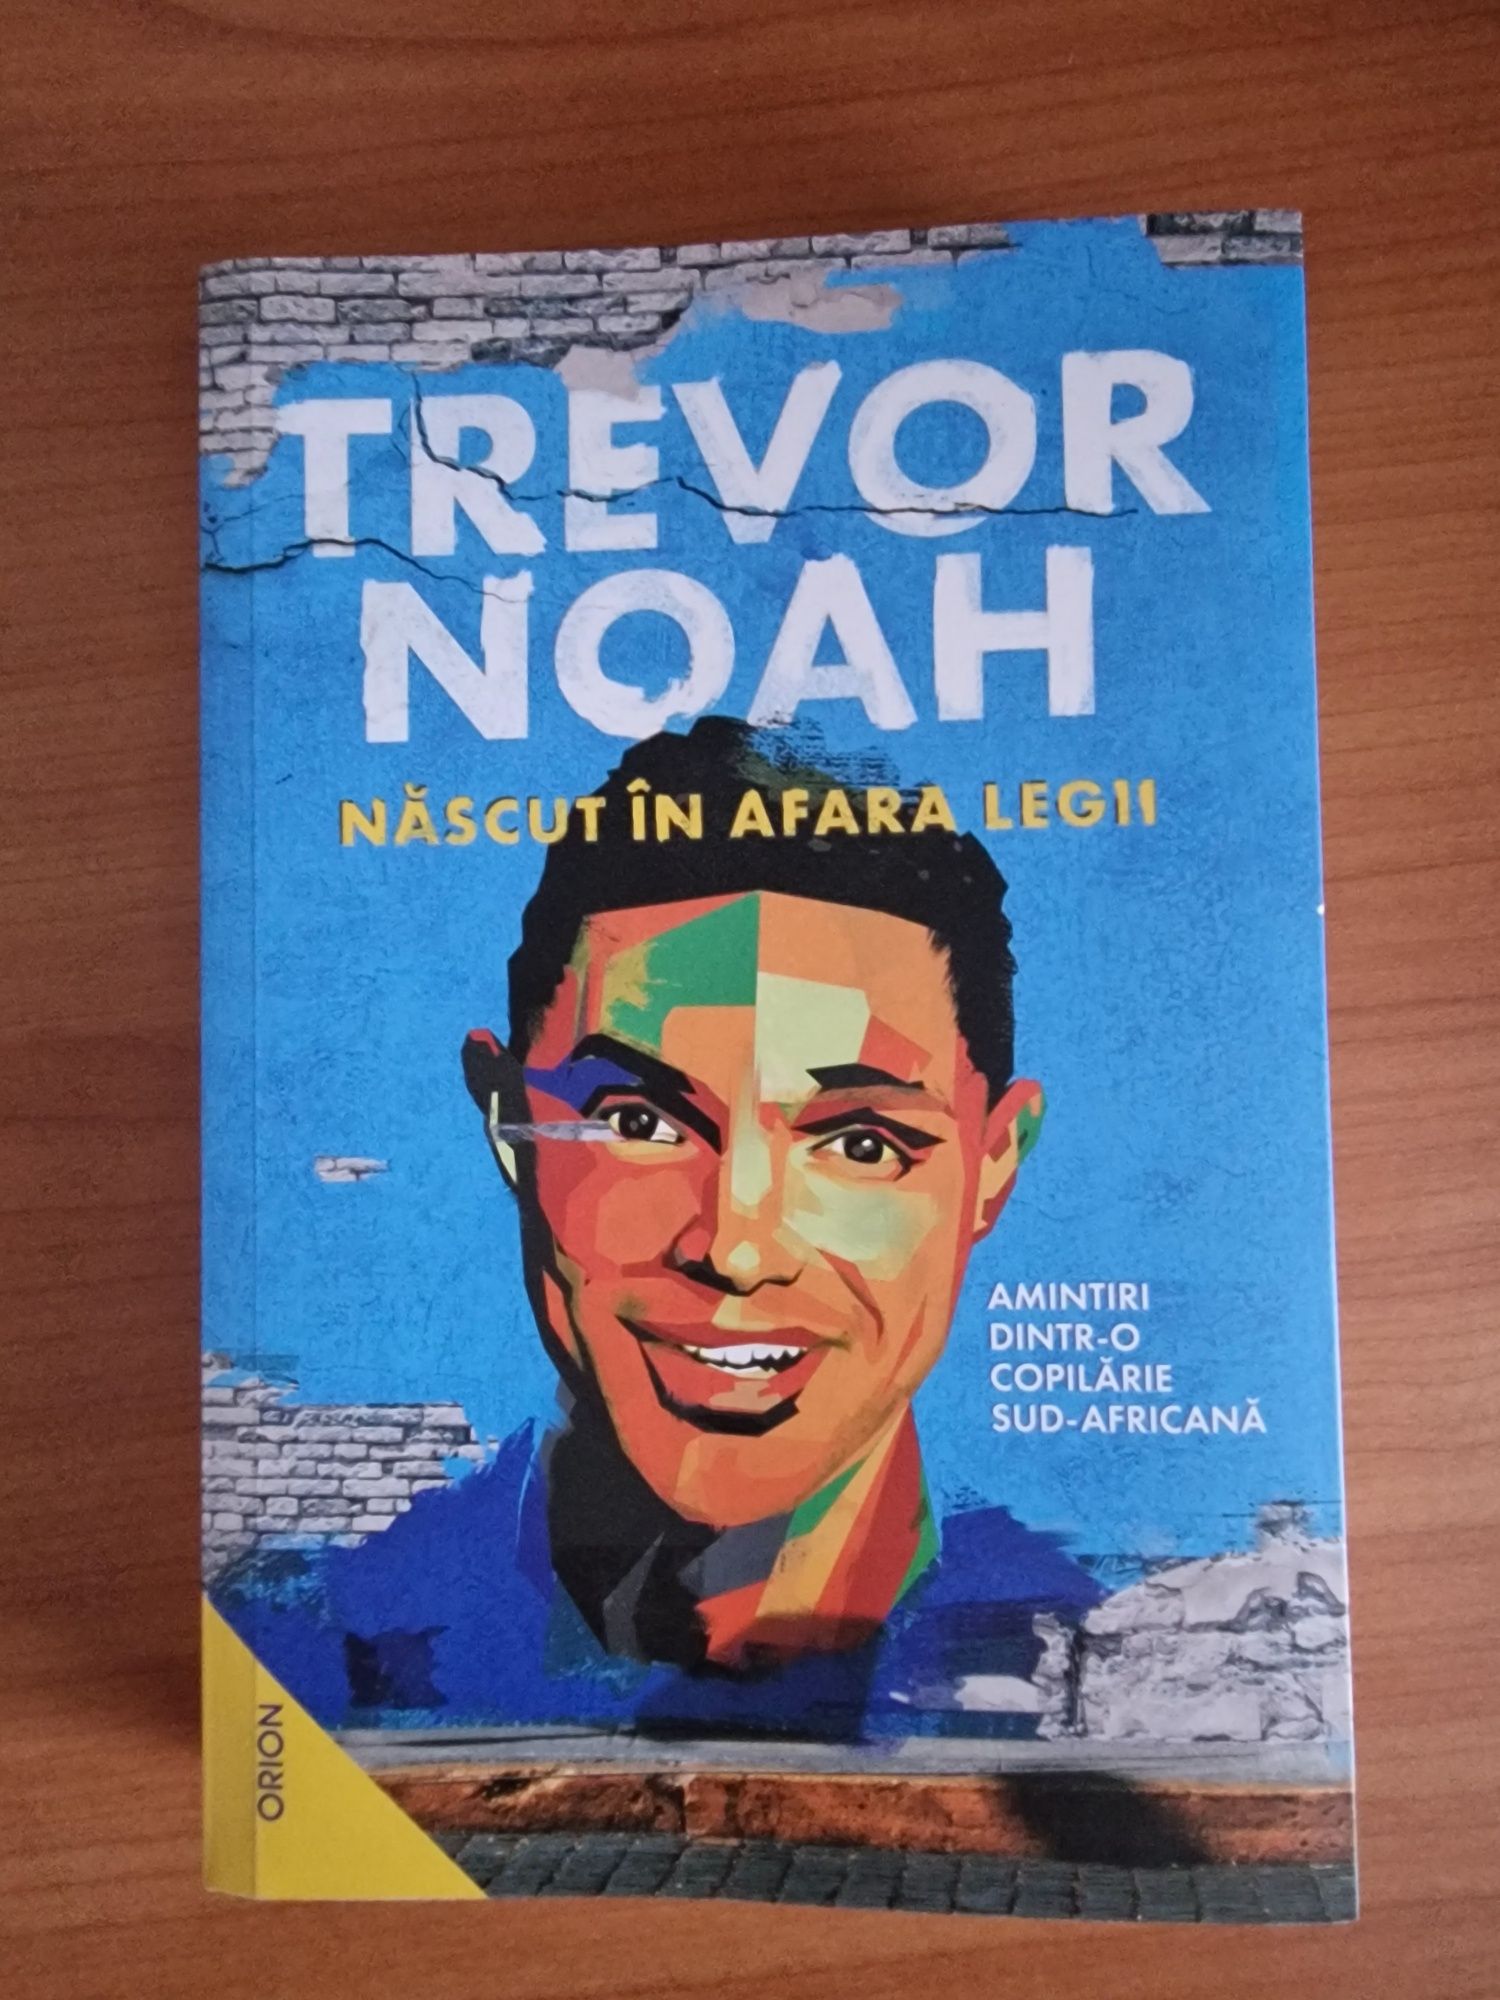 Trevor Noah - născut în afara legii